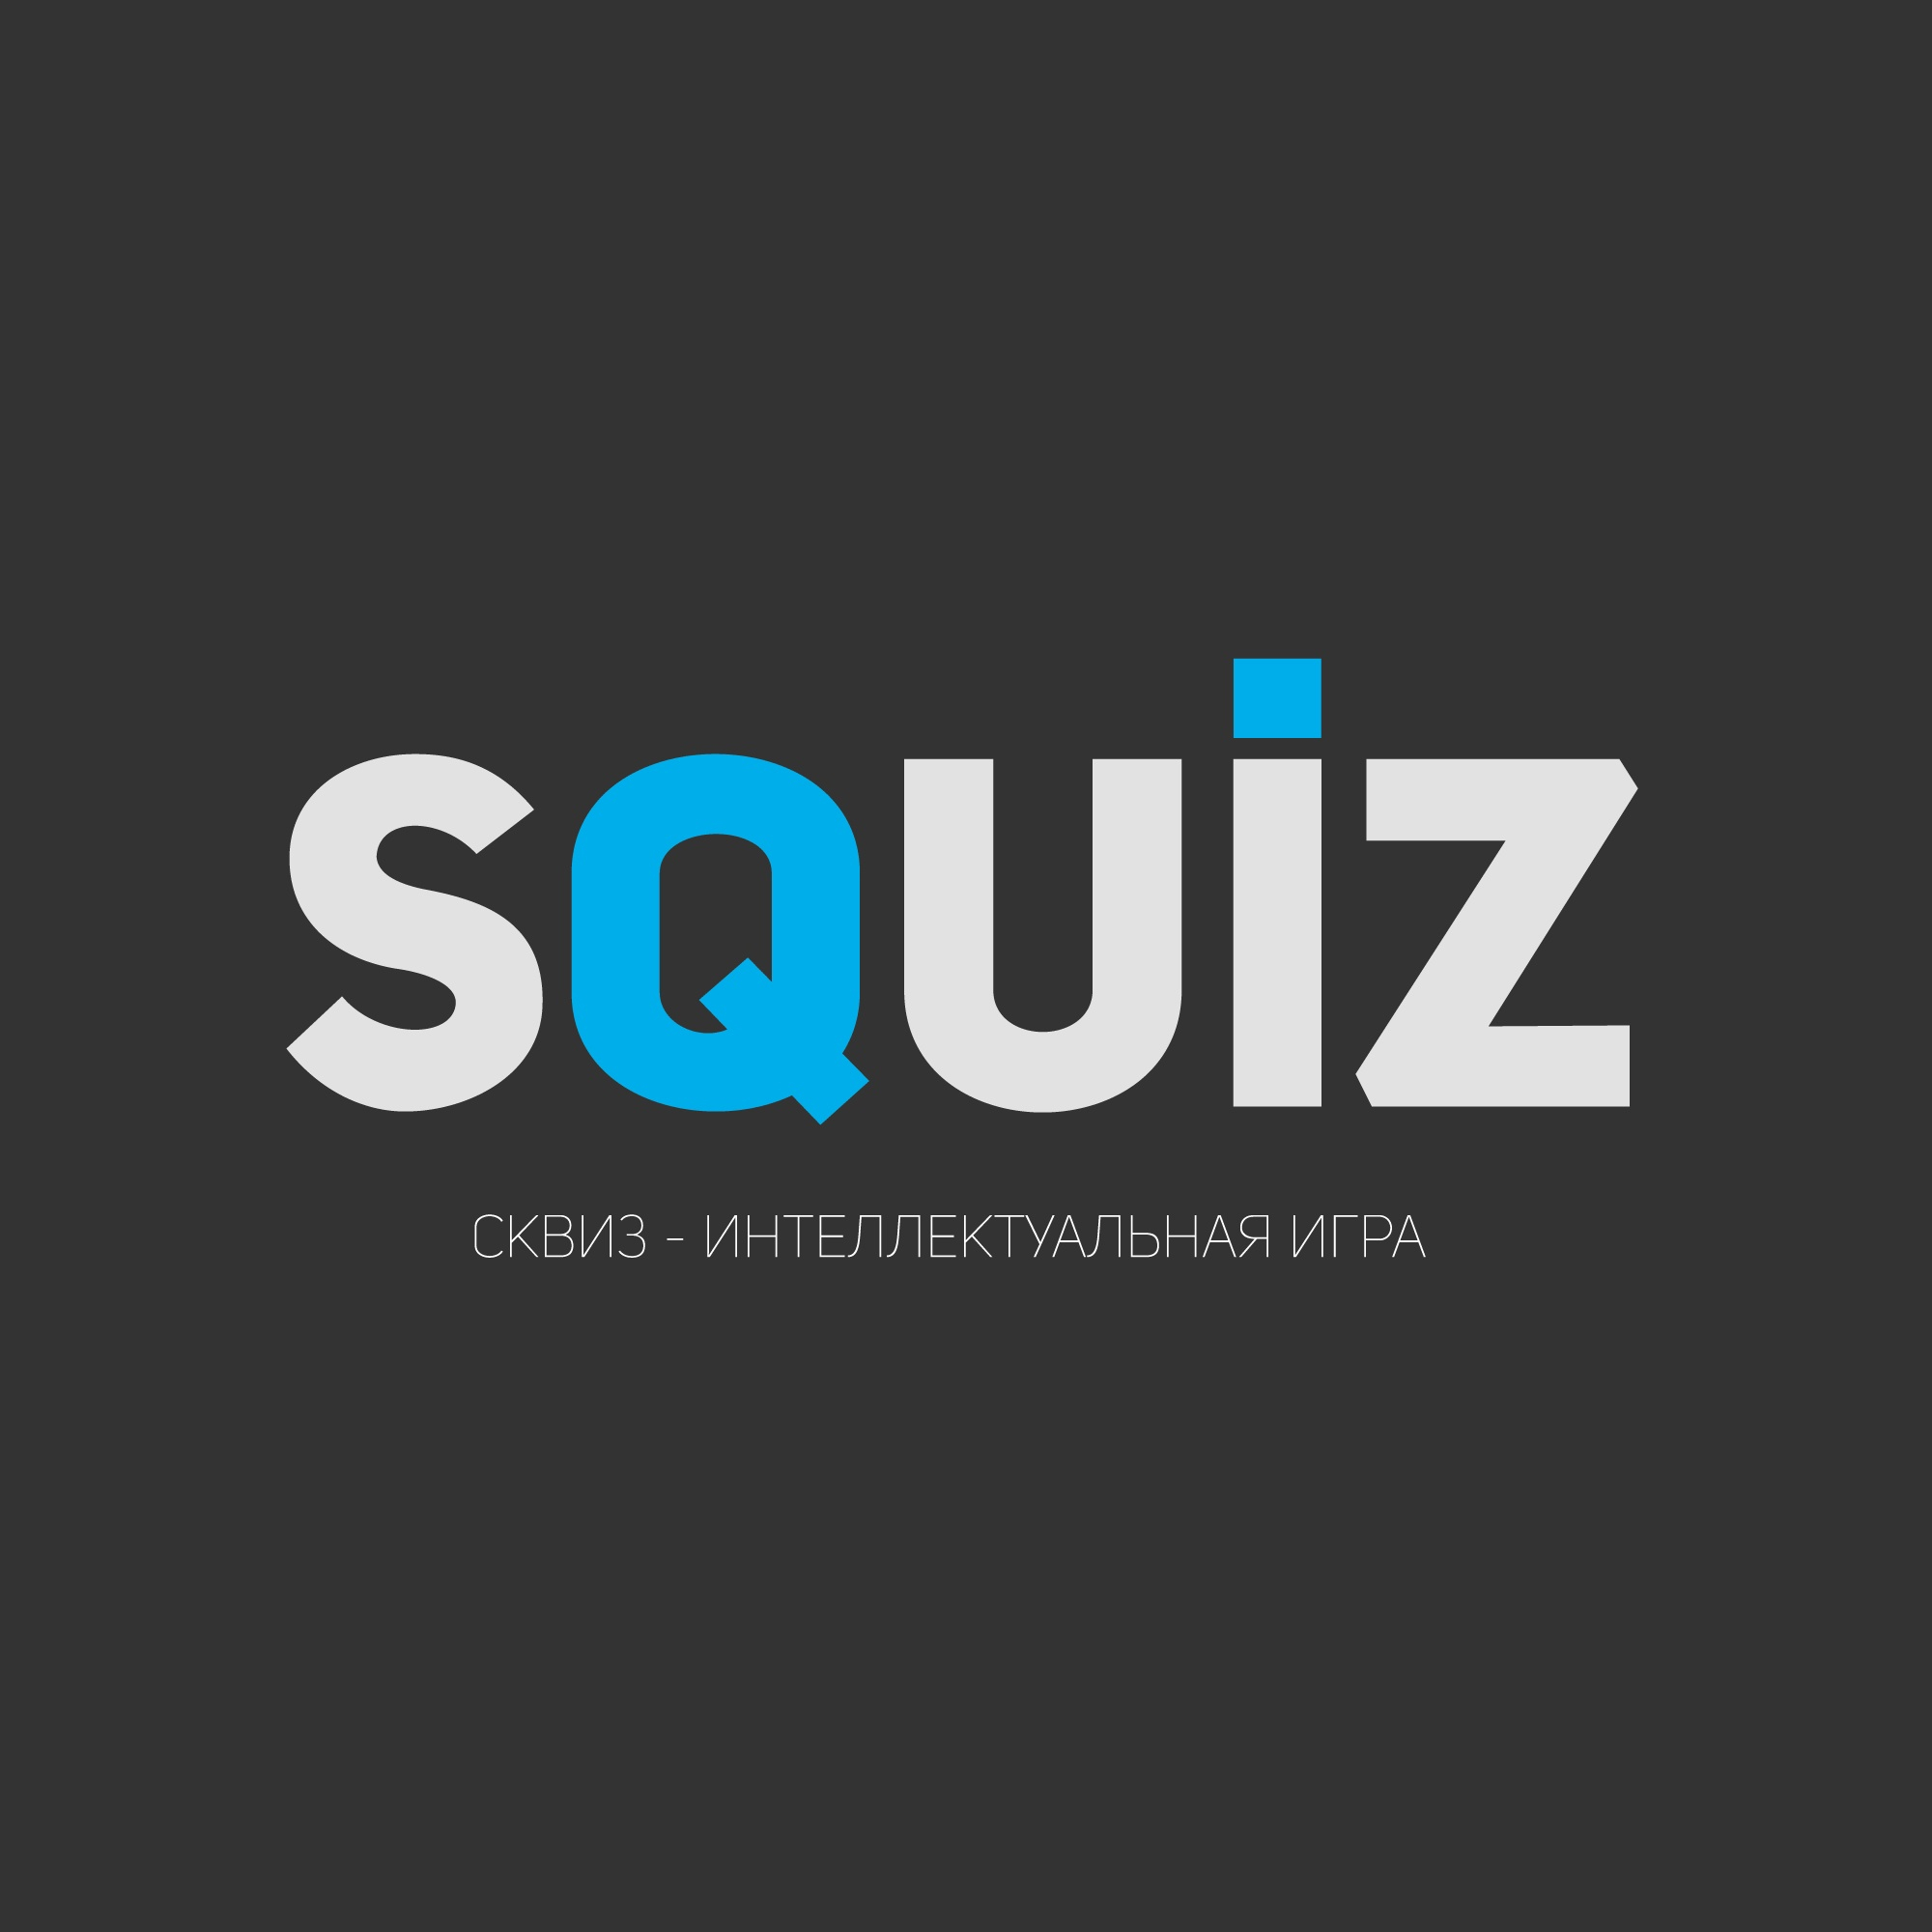 SQUIZ (MSK)